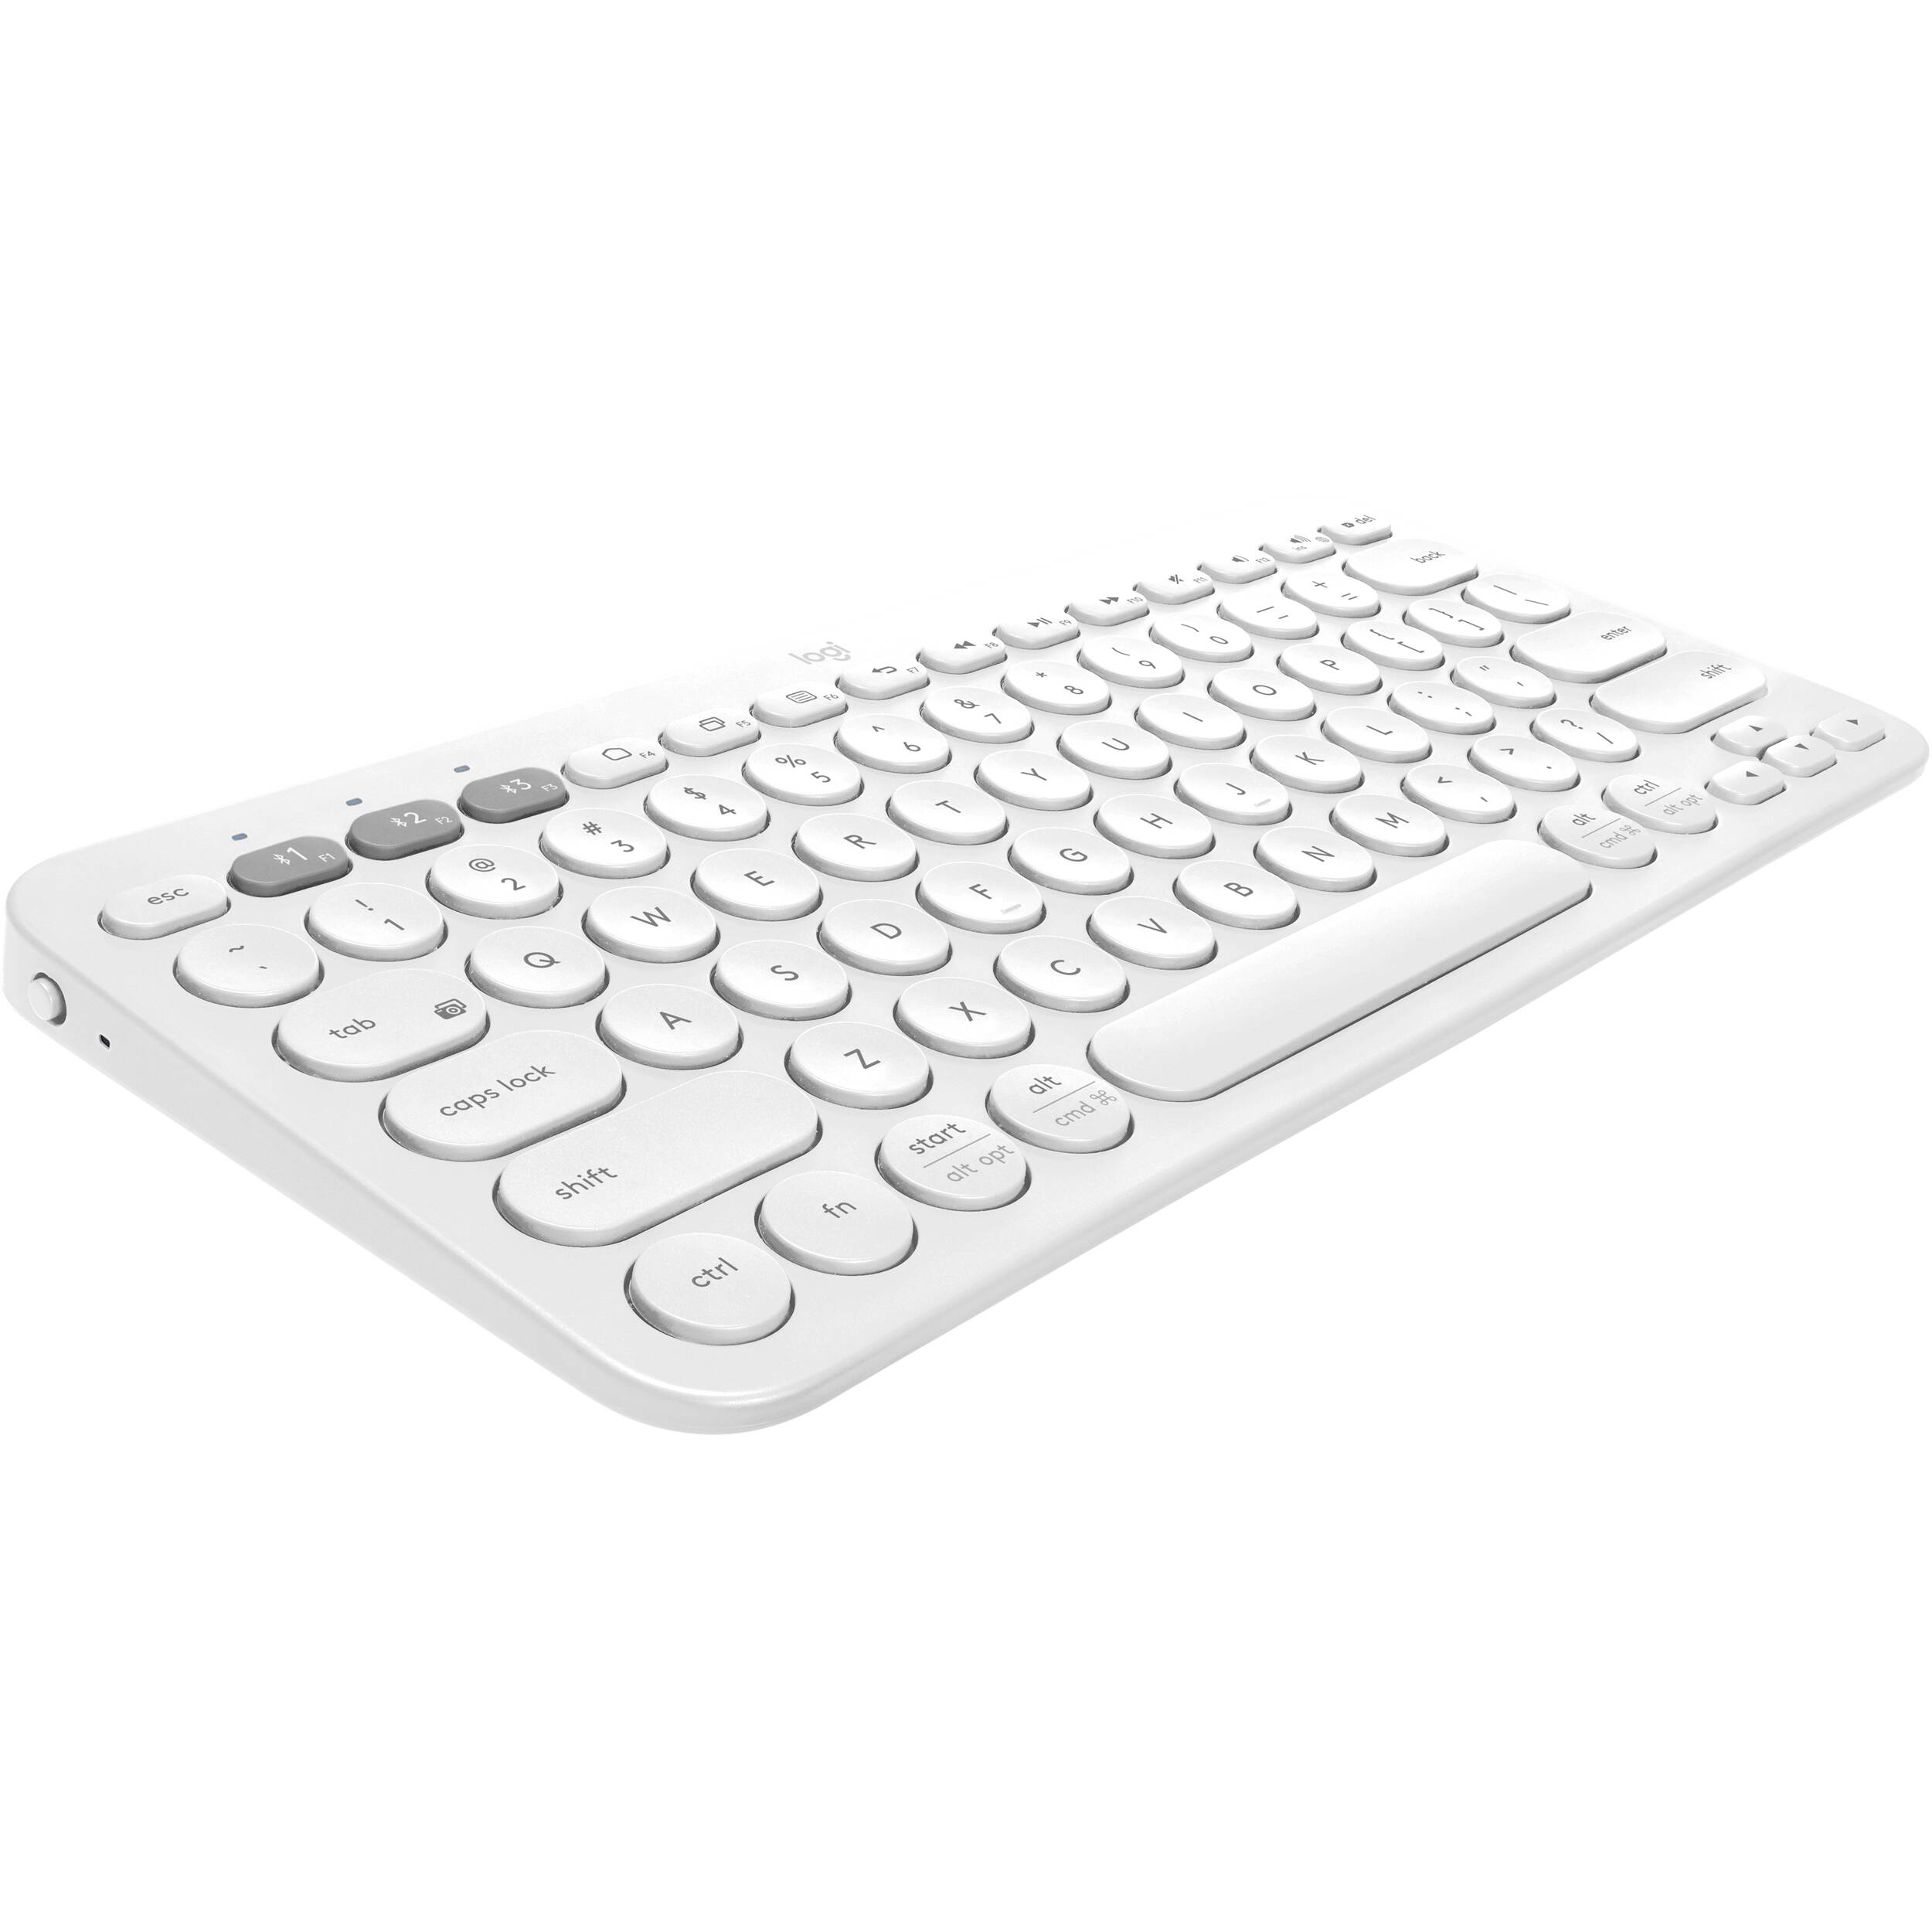 dynex keyboard btkey driver for mac